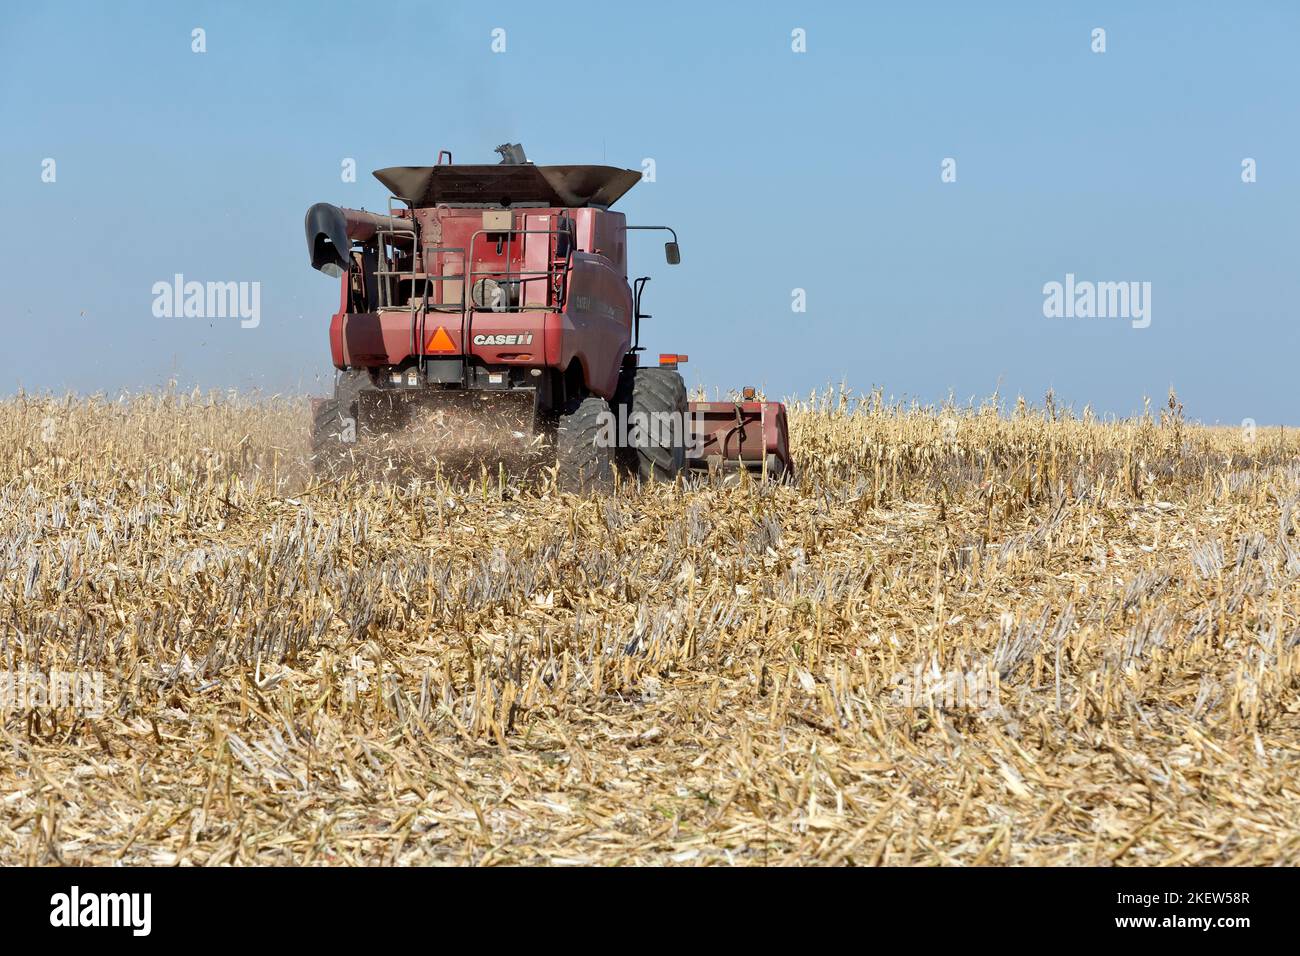 Moissonneuse-batteuse case IH 7088, agriculteur récoltant du maïs mûr « Zea mays », barre de coupe à grain, Kansas. Banque D'Images